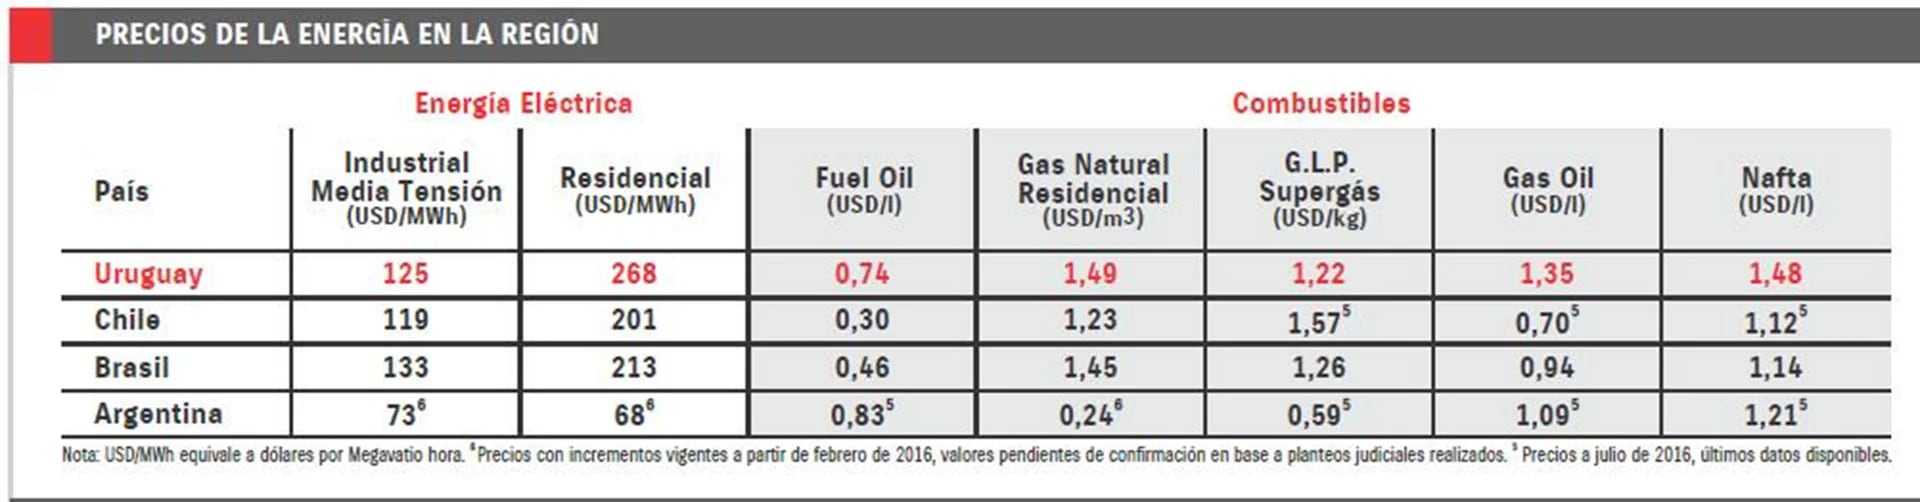 El rezago de las tarifas en la Argentina es generalizado a toda la matriz energética